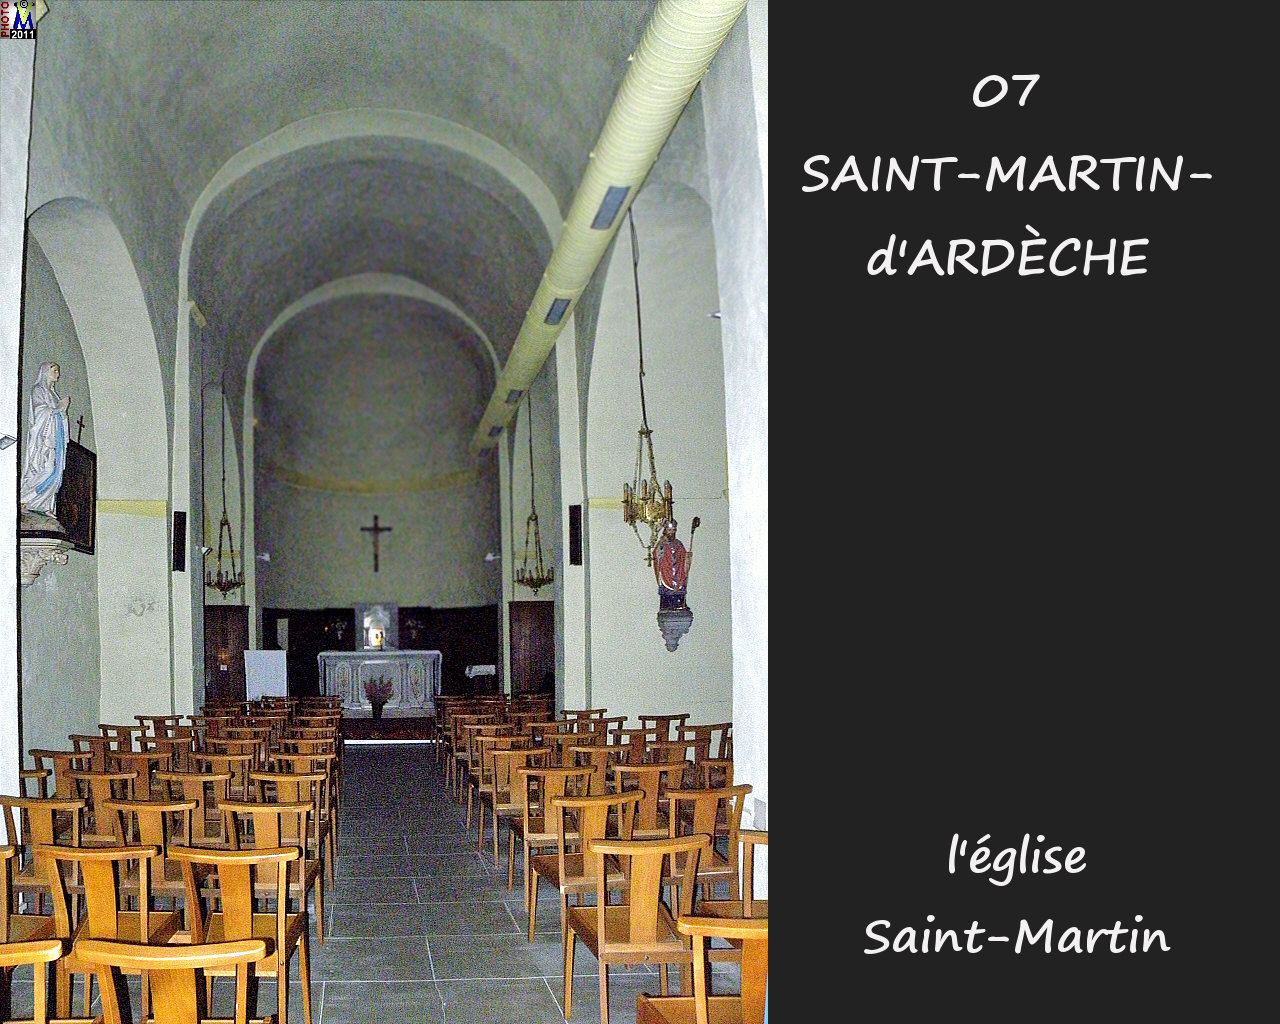 07St-MARTIN-ARDECHE_eglise_200.jpg